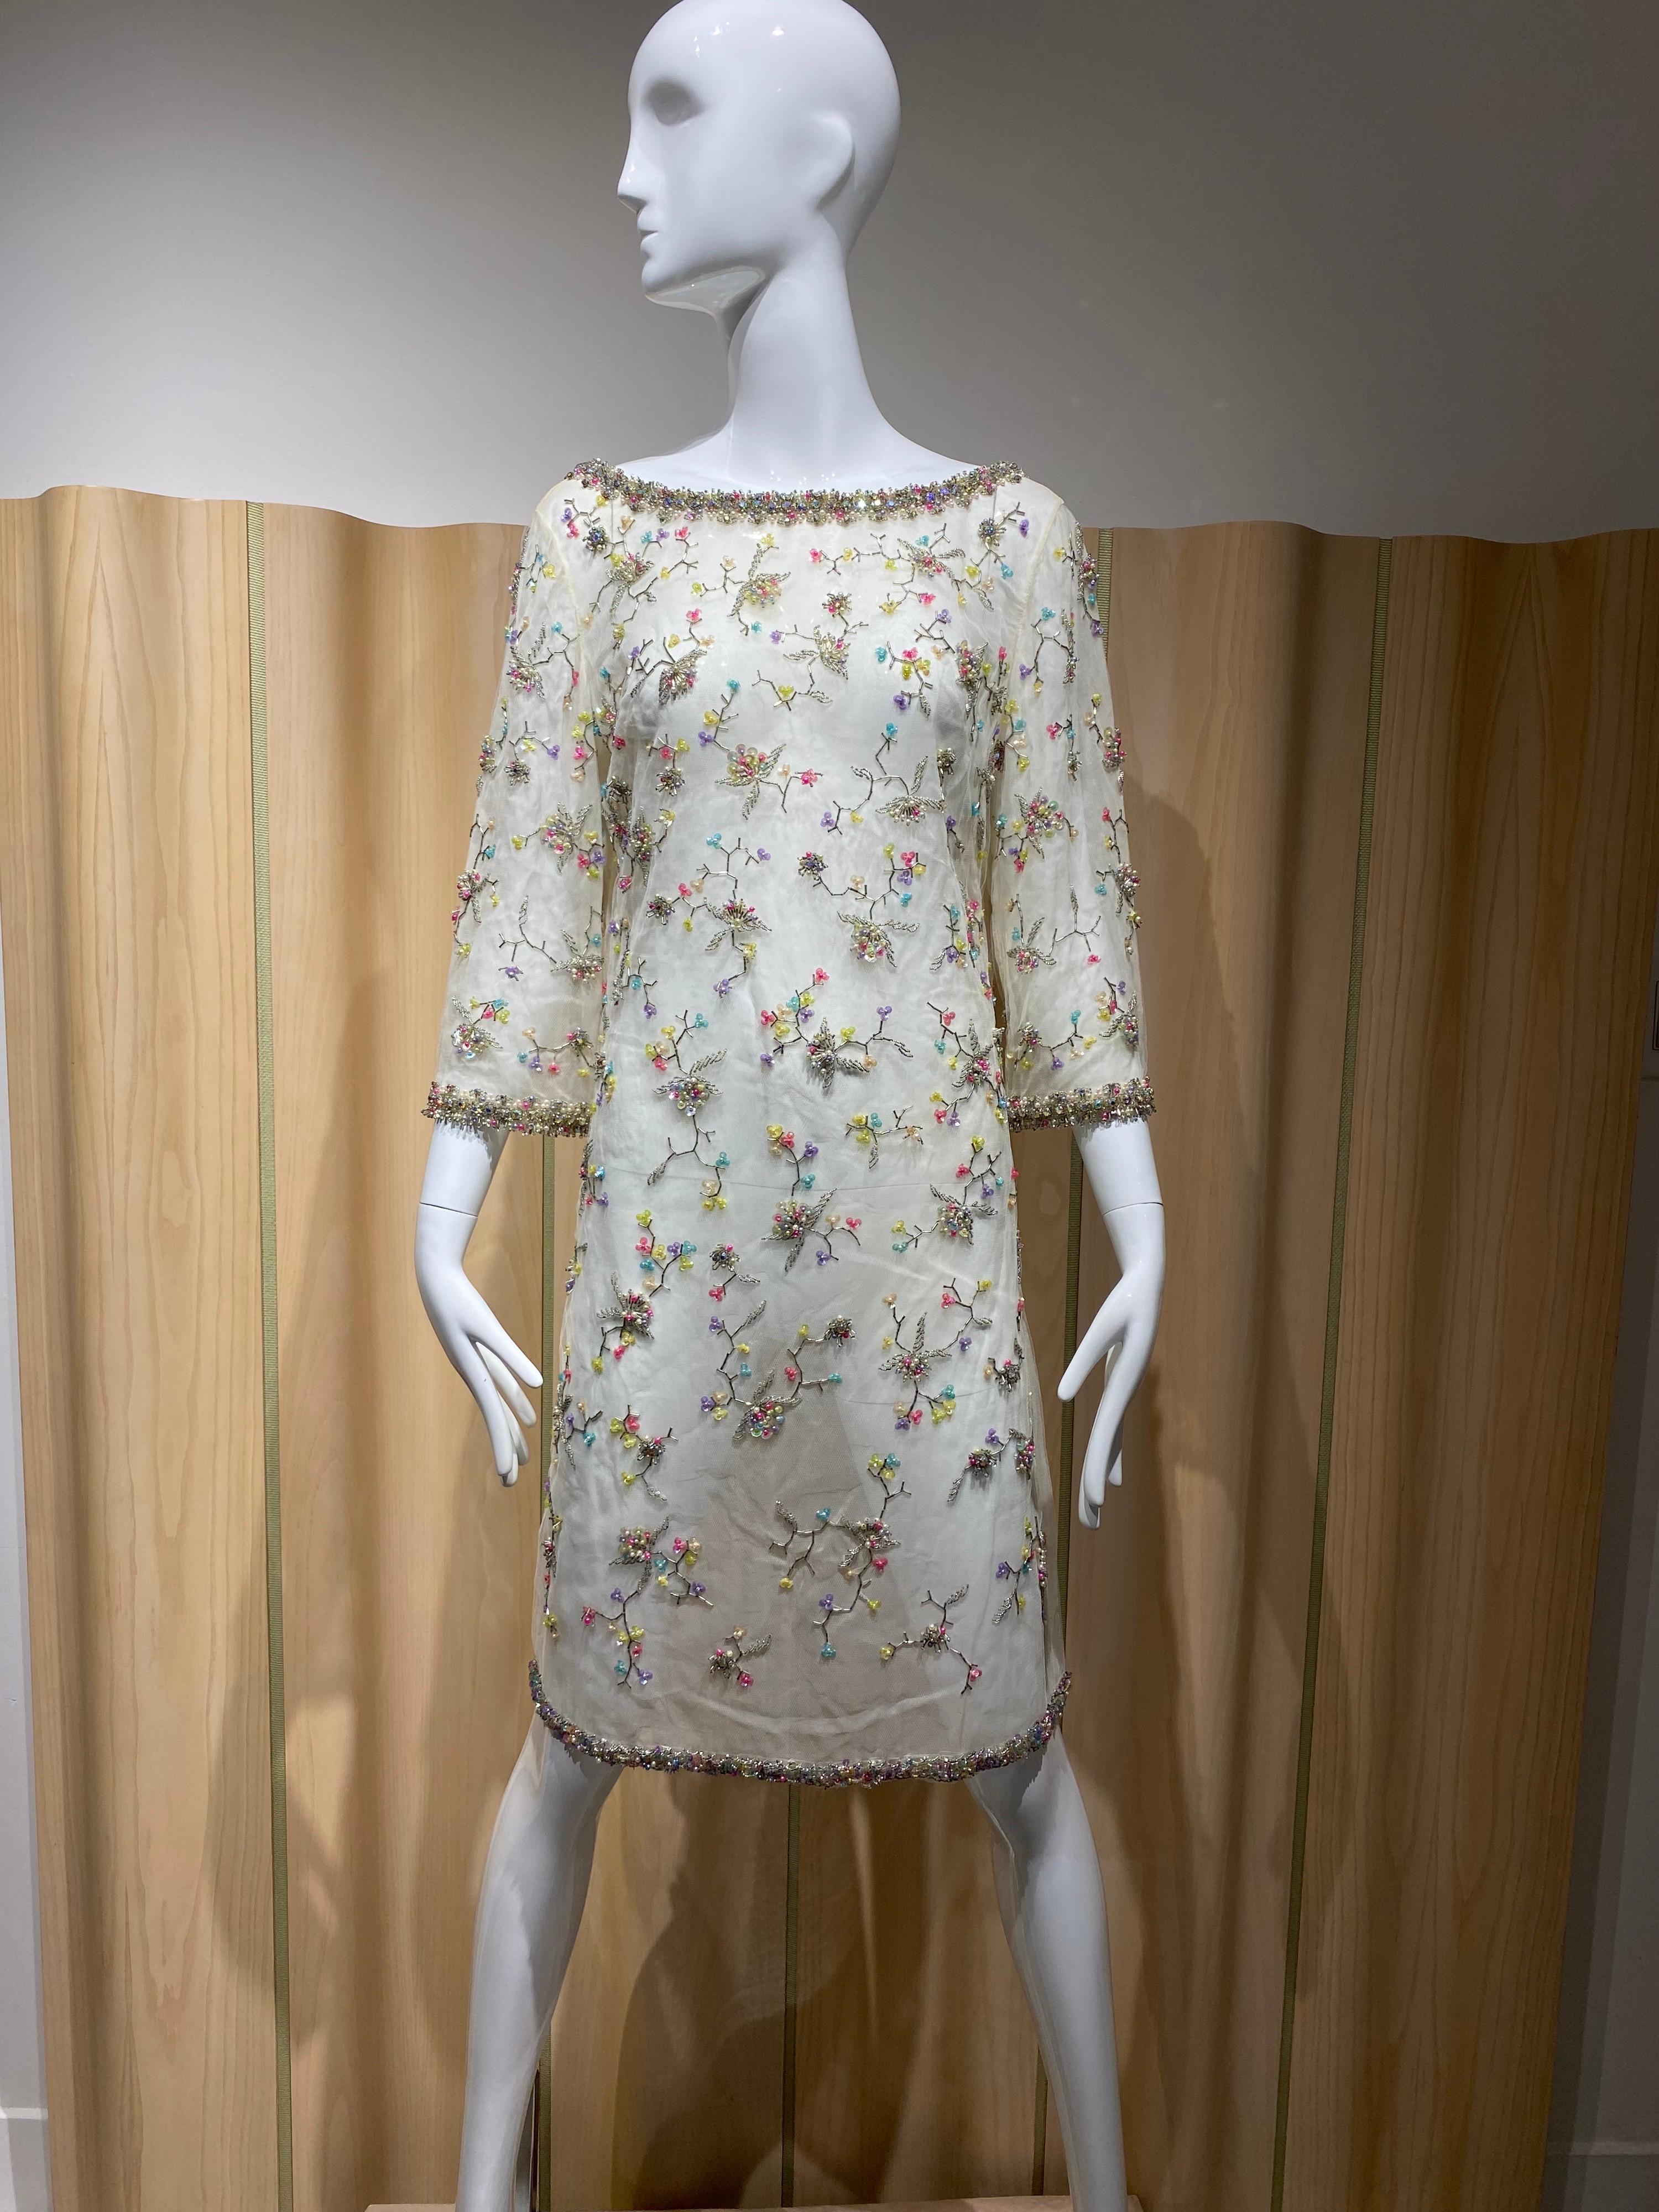 robe de cocktail fourreau en filet blanc des années 1960, ornée de perles multicolores à motif floral. Taille moyenne à grande 

Mesure :
Poitrine : 38